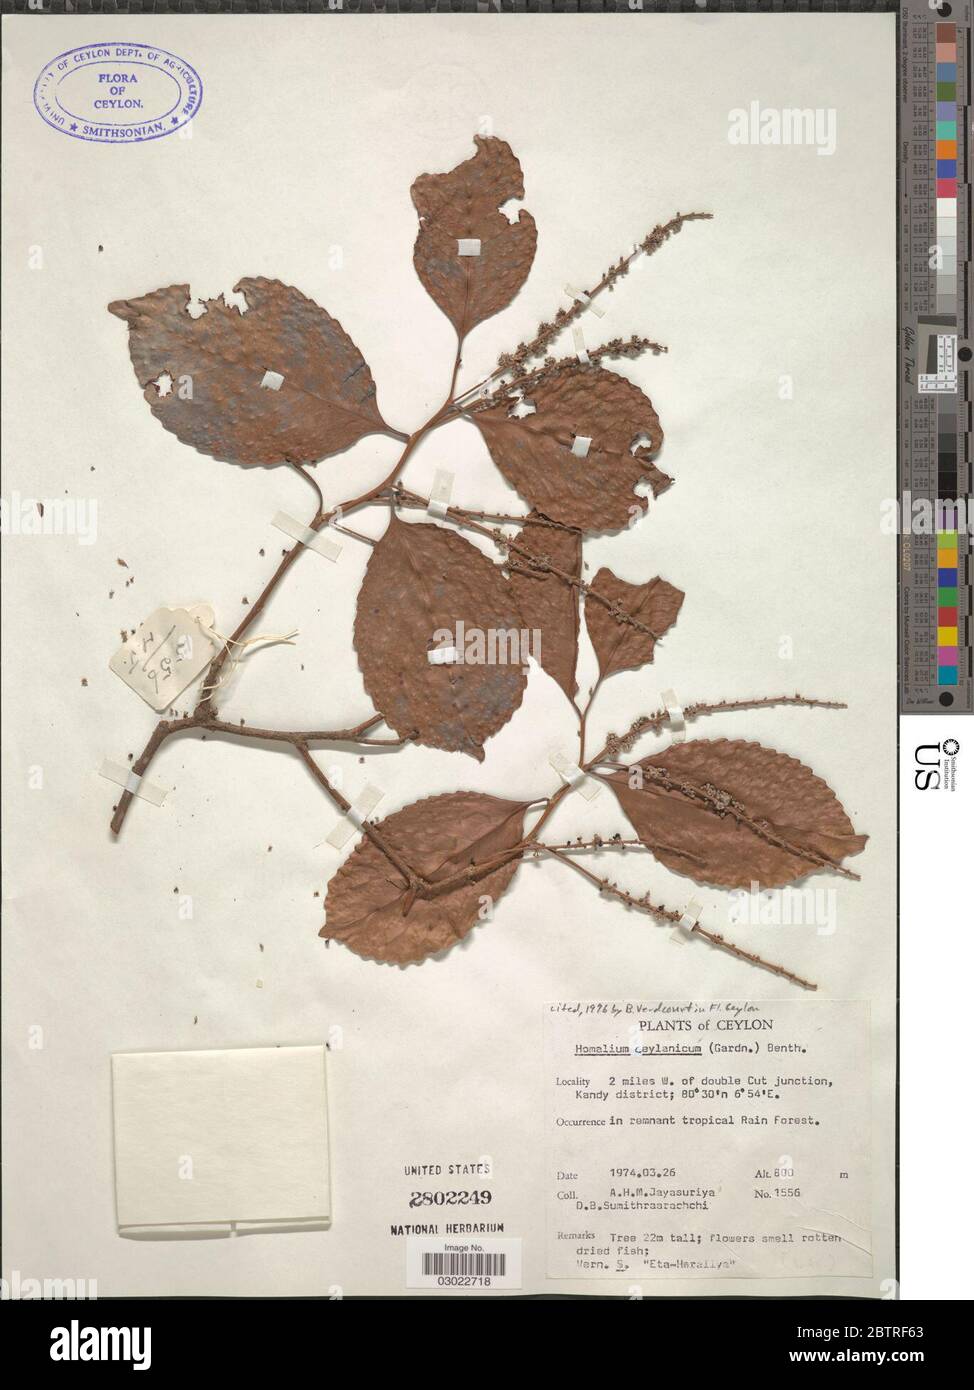 Homalium ceylanicum Gardner Benth. Stock Photo